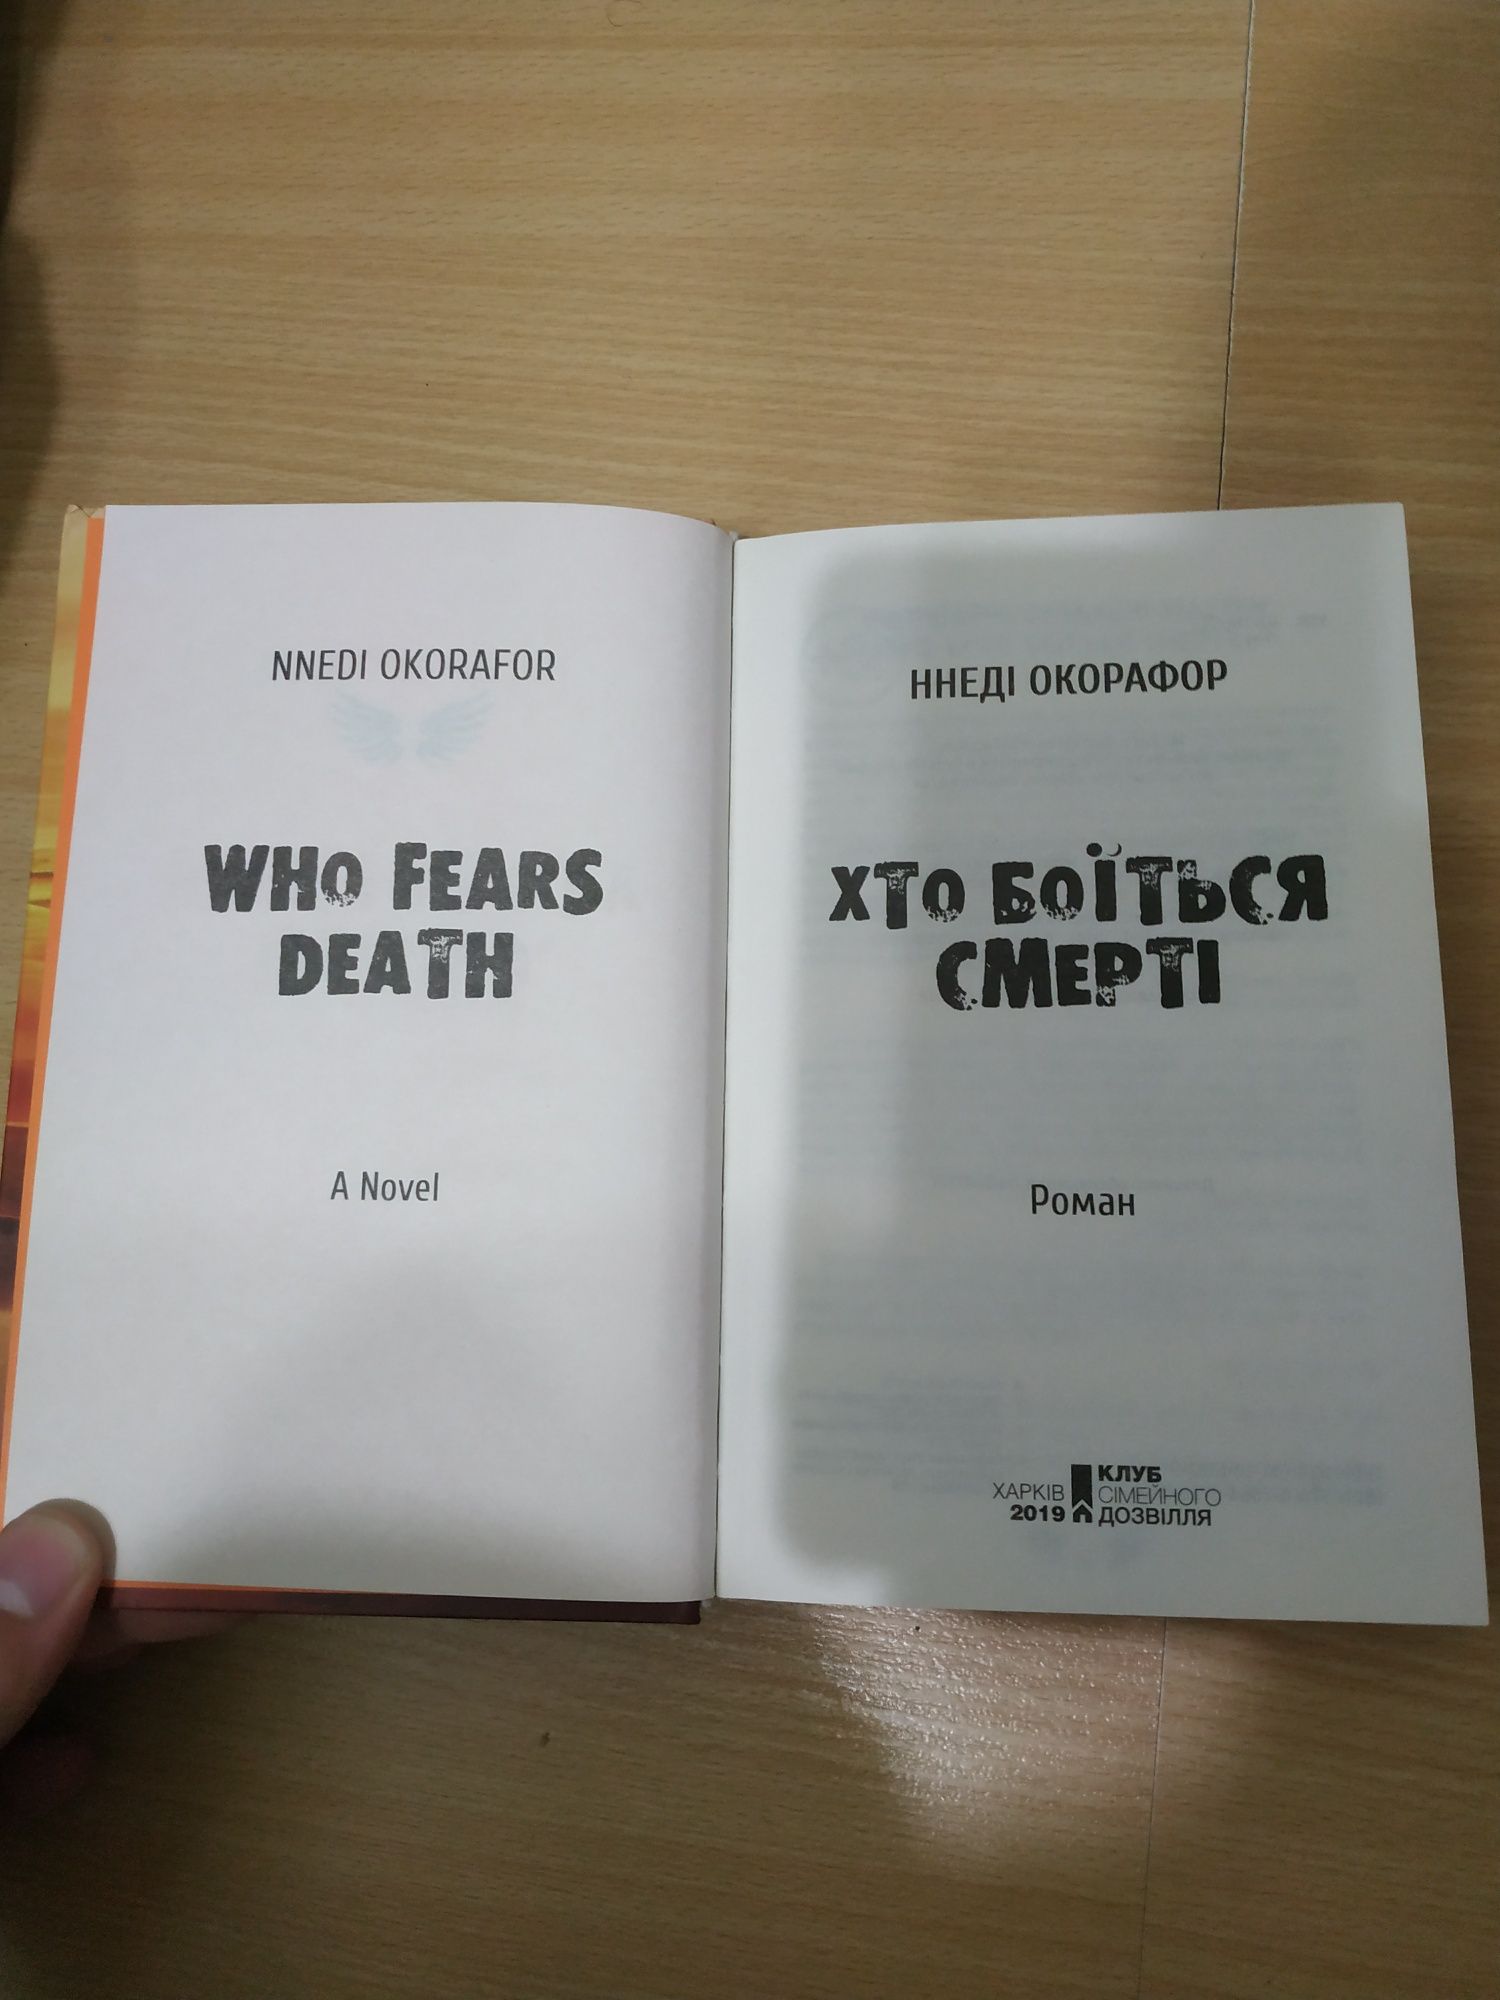 Книга Ннеді Окорафор "Хто боїться смерті"